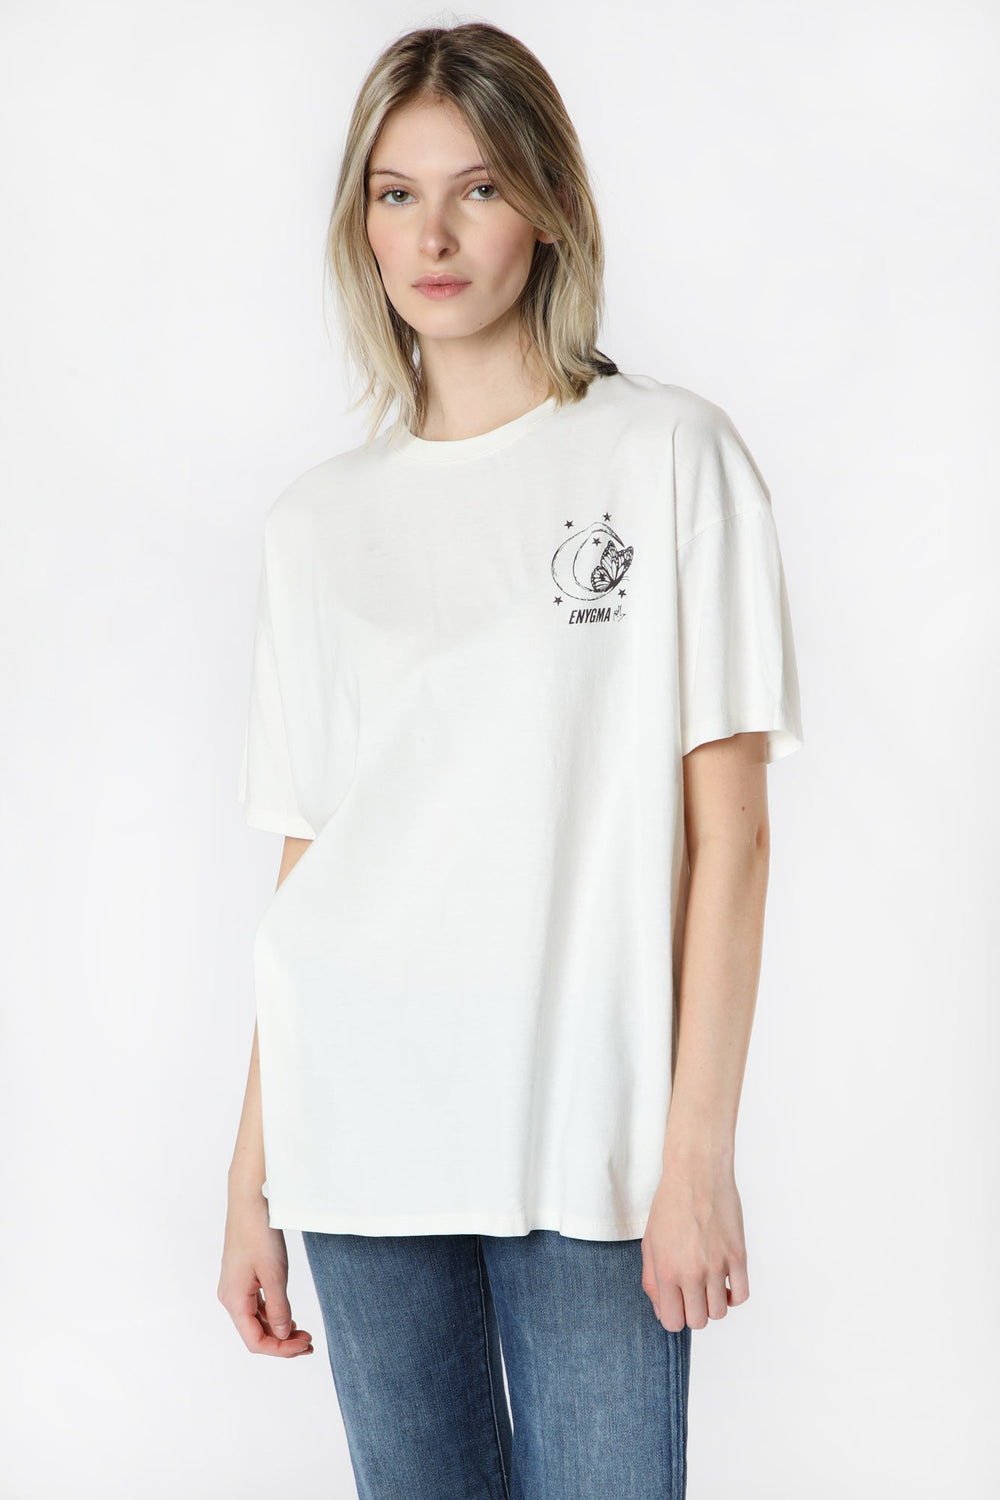 T-Shirt Surdimensionné Imprimé Enygma Femme T-Shirt Surdimensionné Imprimé Enygma Femme